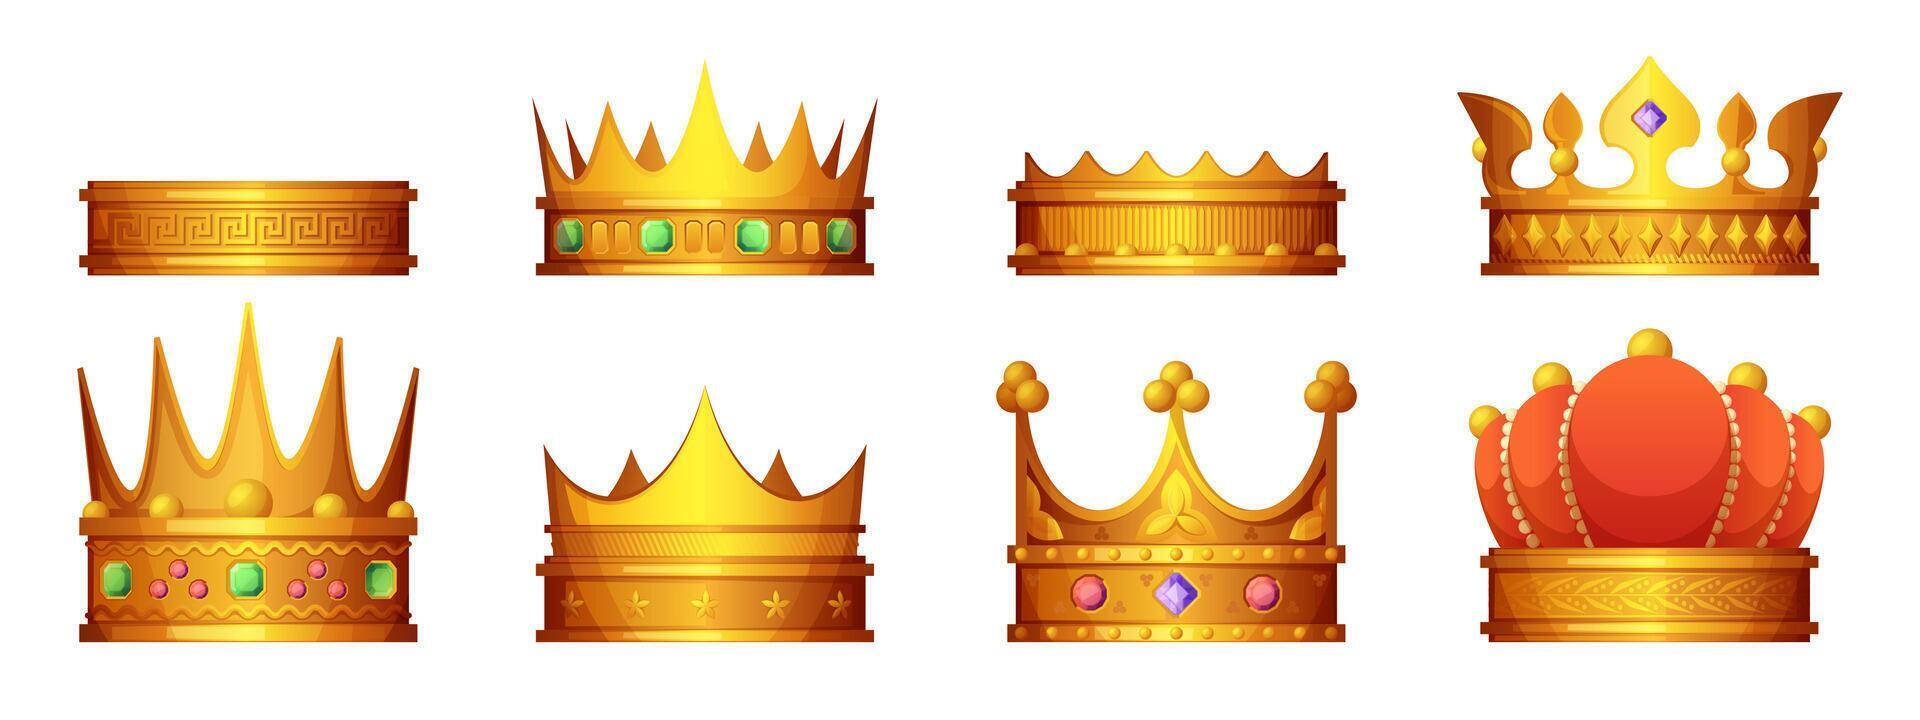 reale corona impostare. cartone animato re nobile cavaliere Principessa testa decorazioni, antico reale corona con gioielli, tiara nel piatto stile. vettore isolato impostato